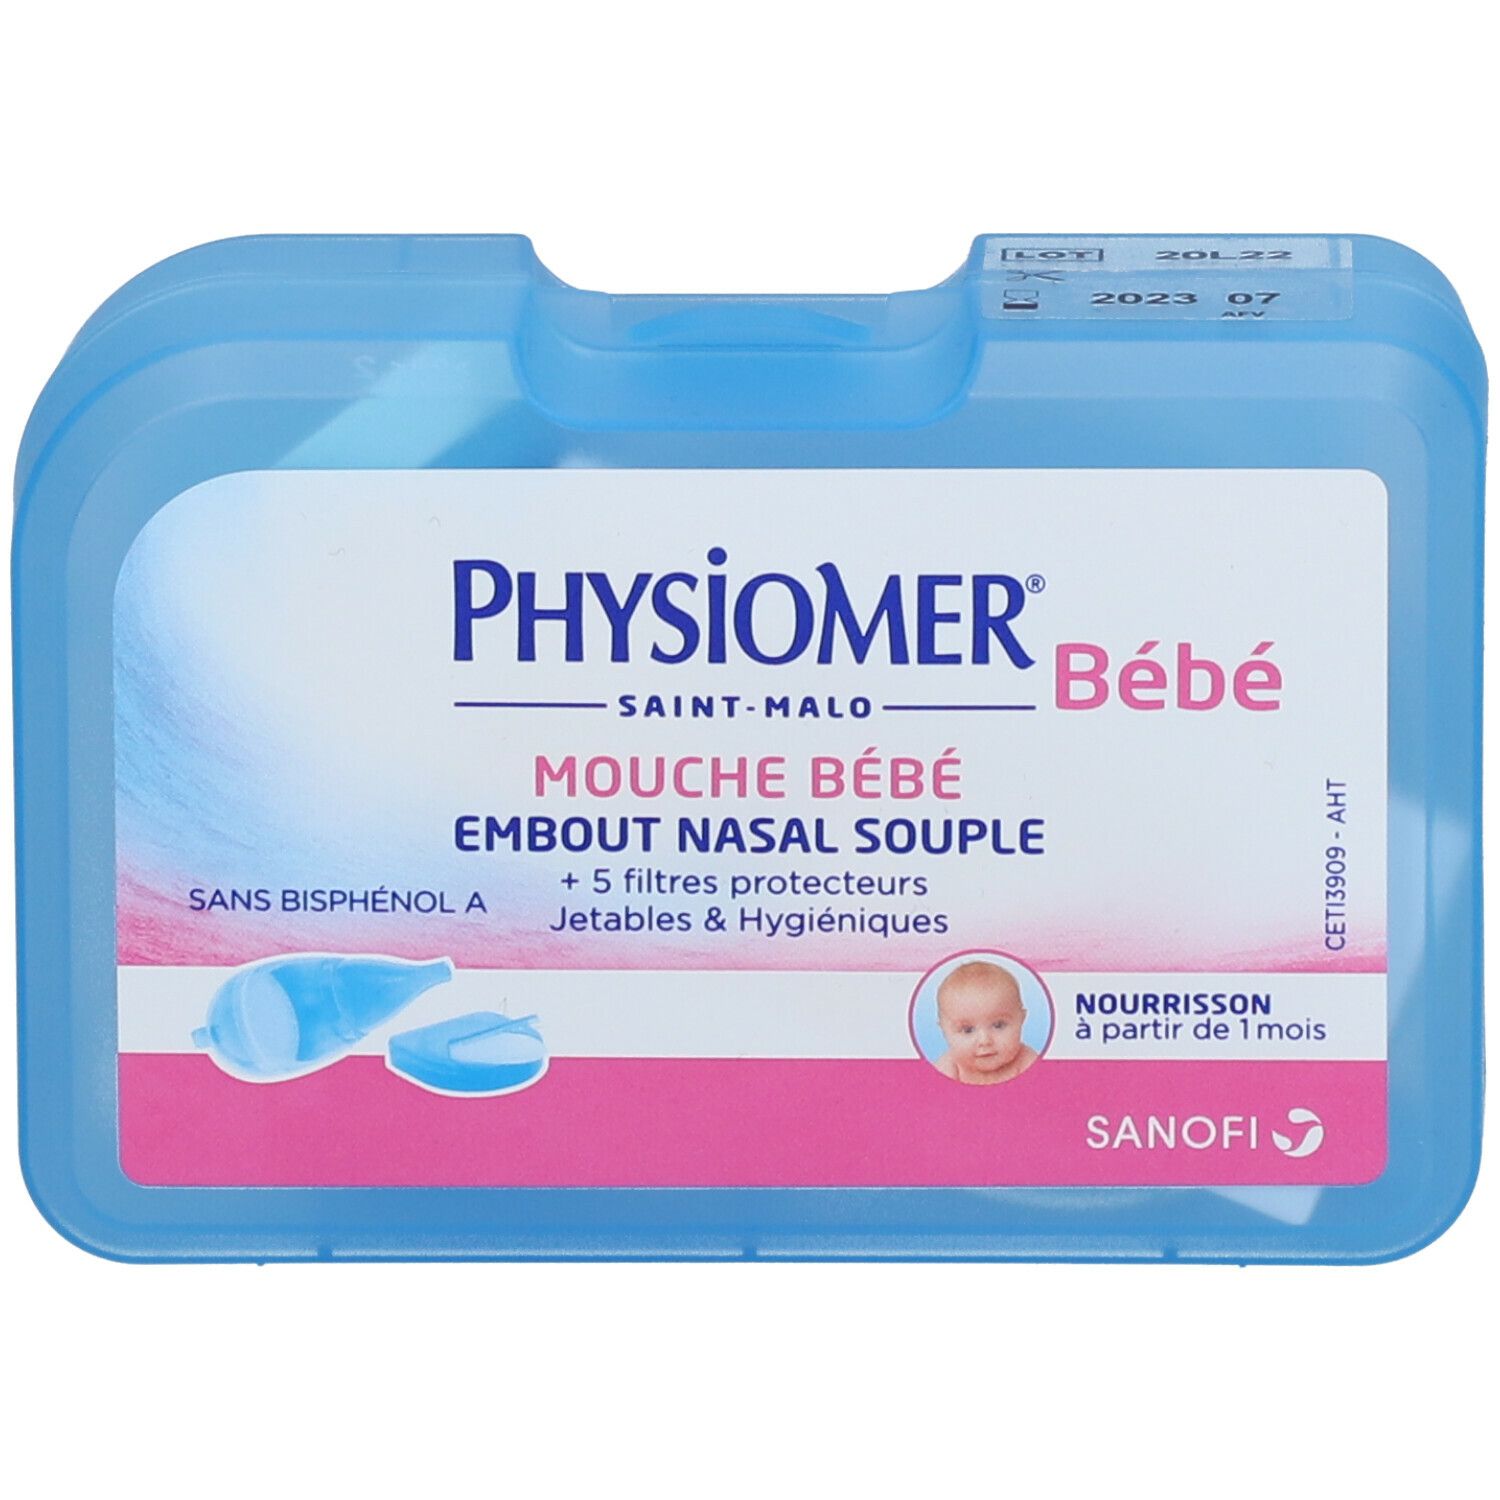 Physiomer mouche bébé + 5 filtres